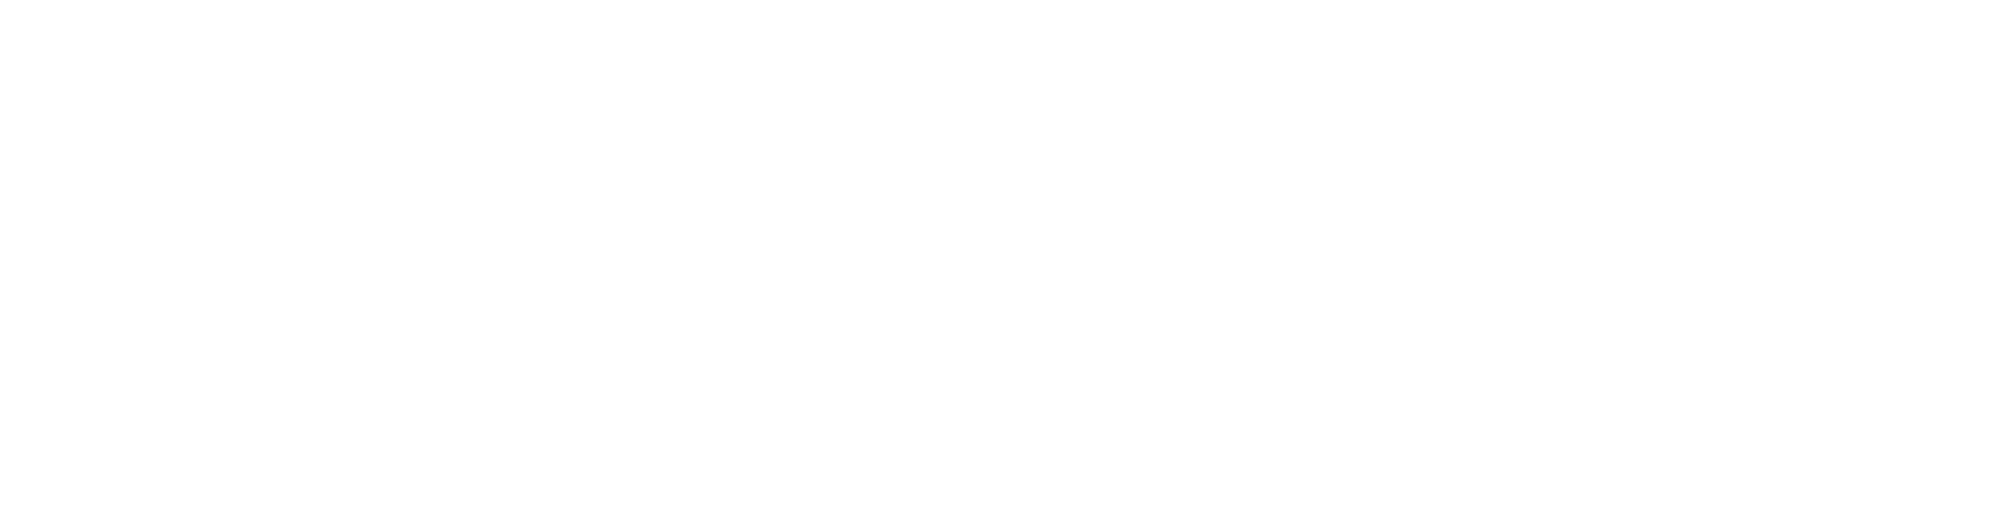 running dog music